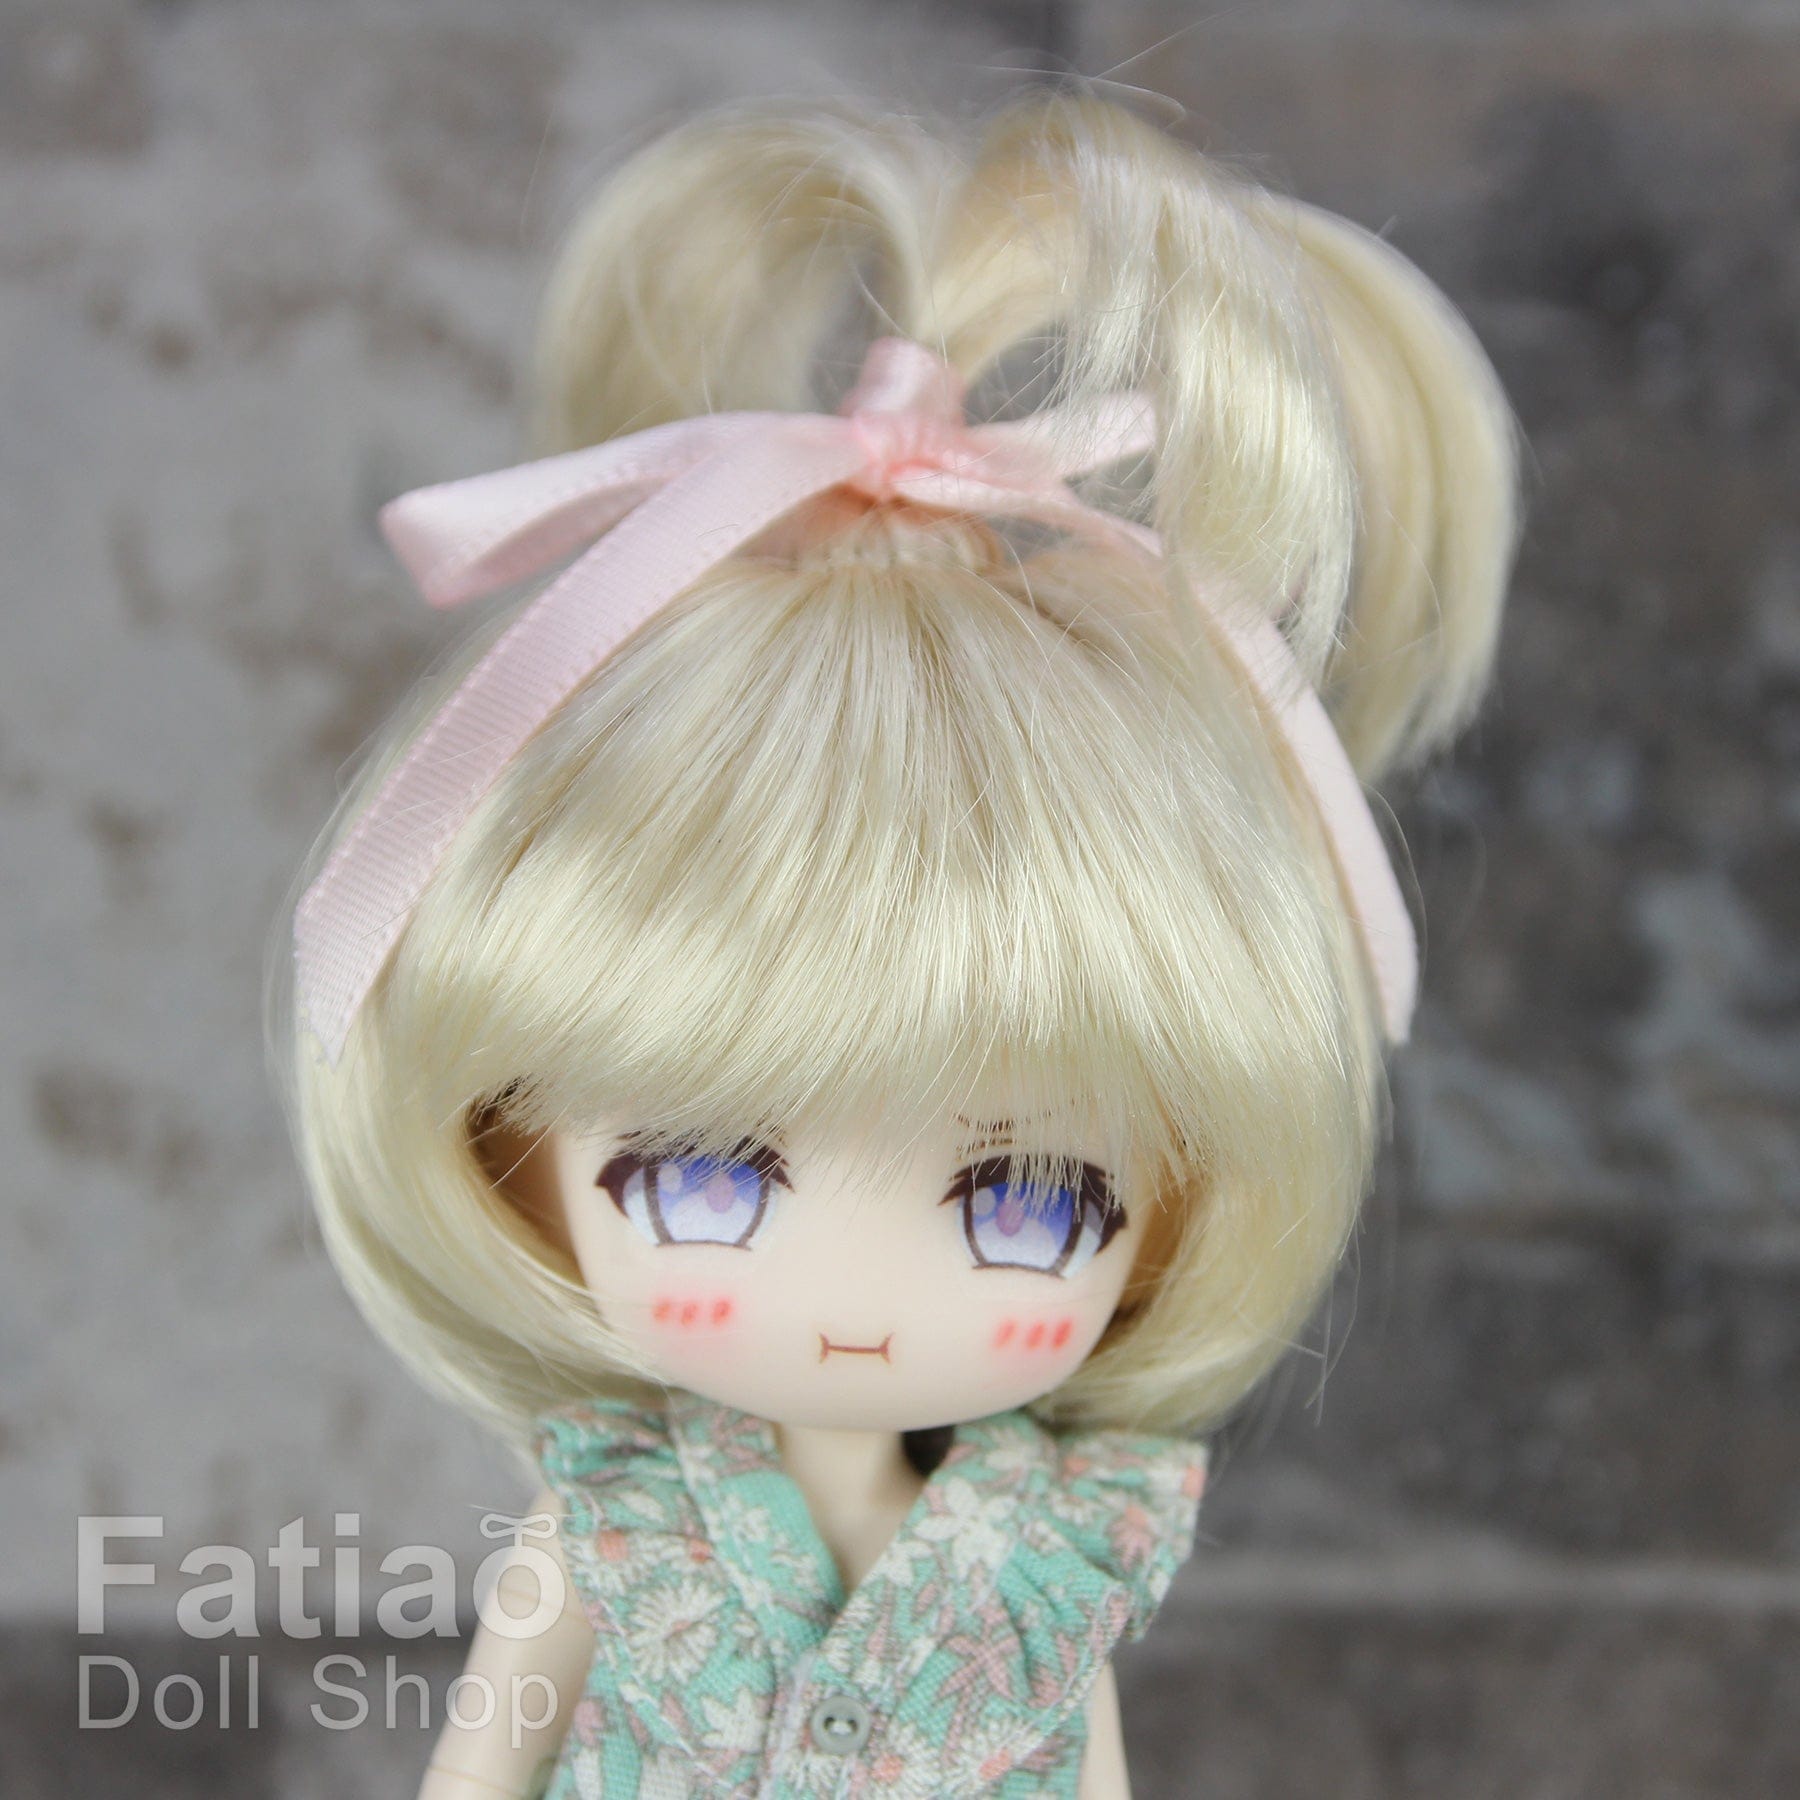 【Fatiao Doll Shop】FWF-002 娃用假髮 多色 / 4-5吋 BJD 8分 12分 iMda1.7